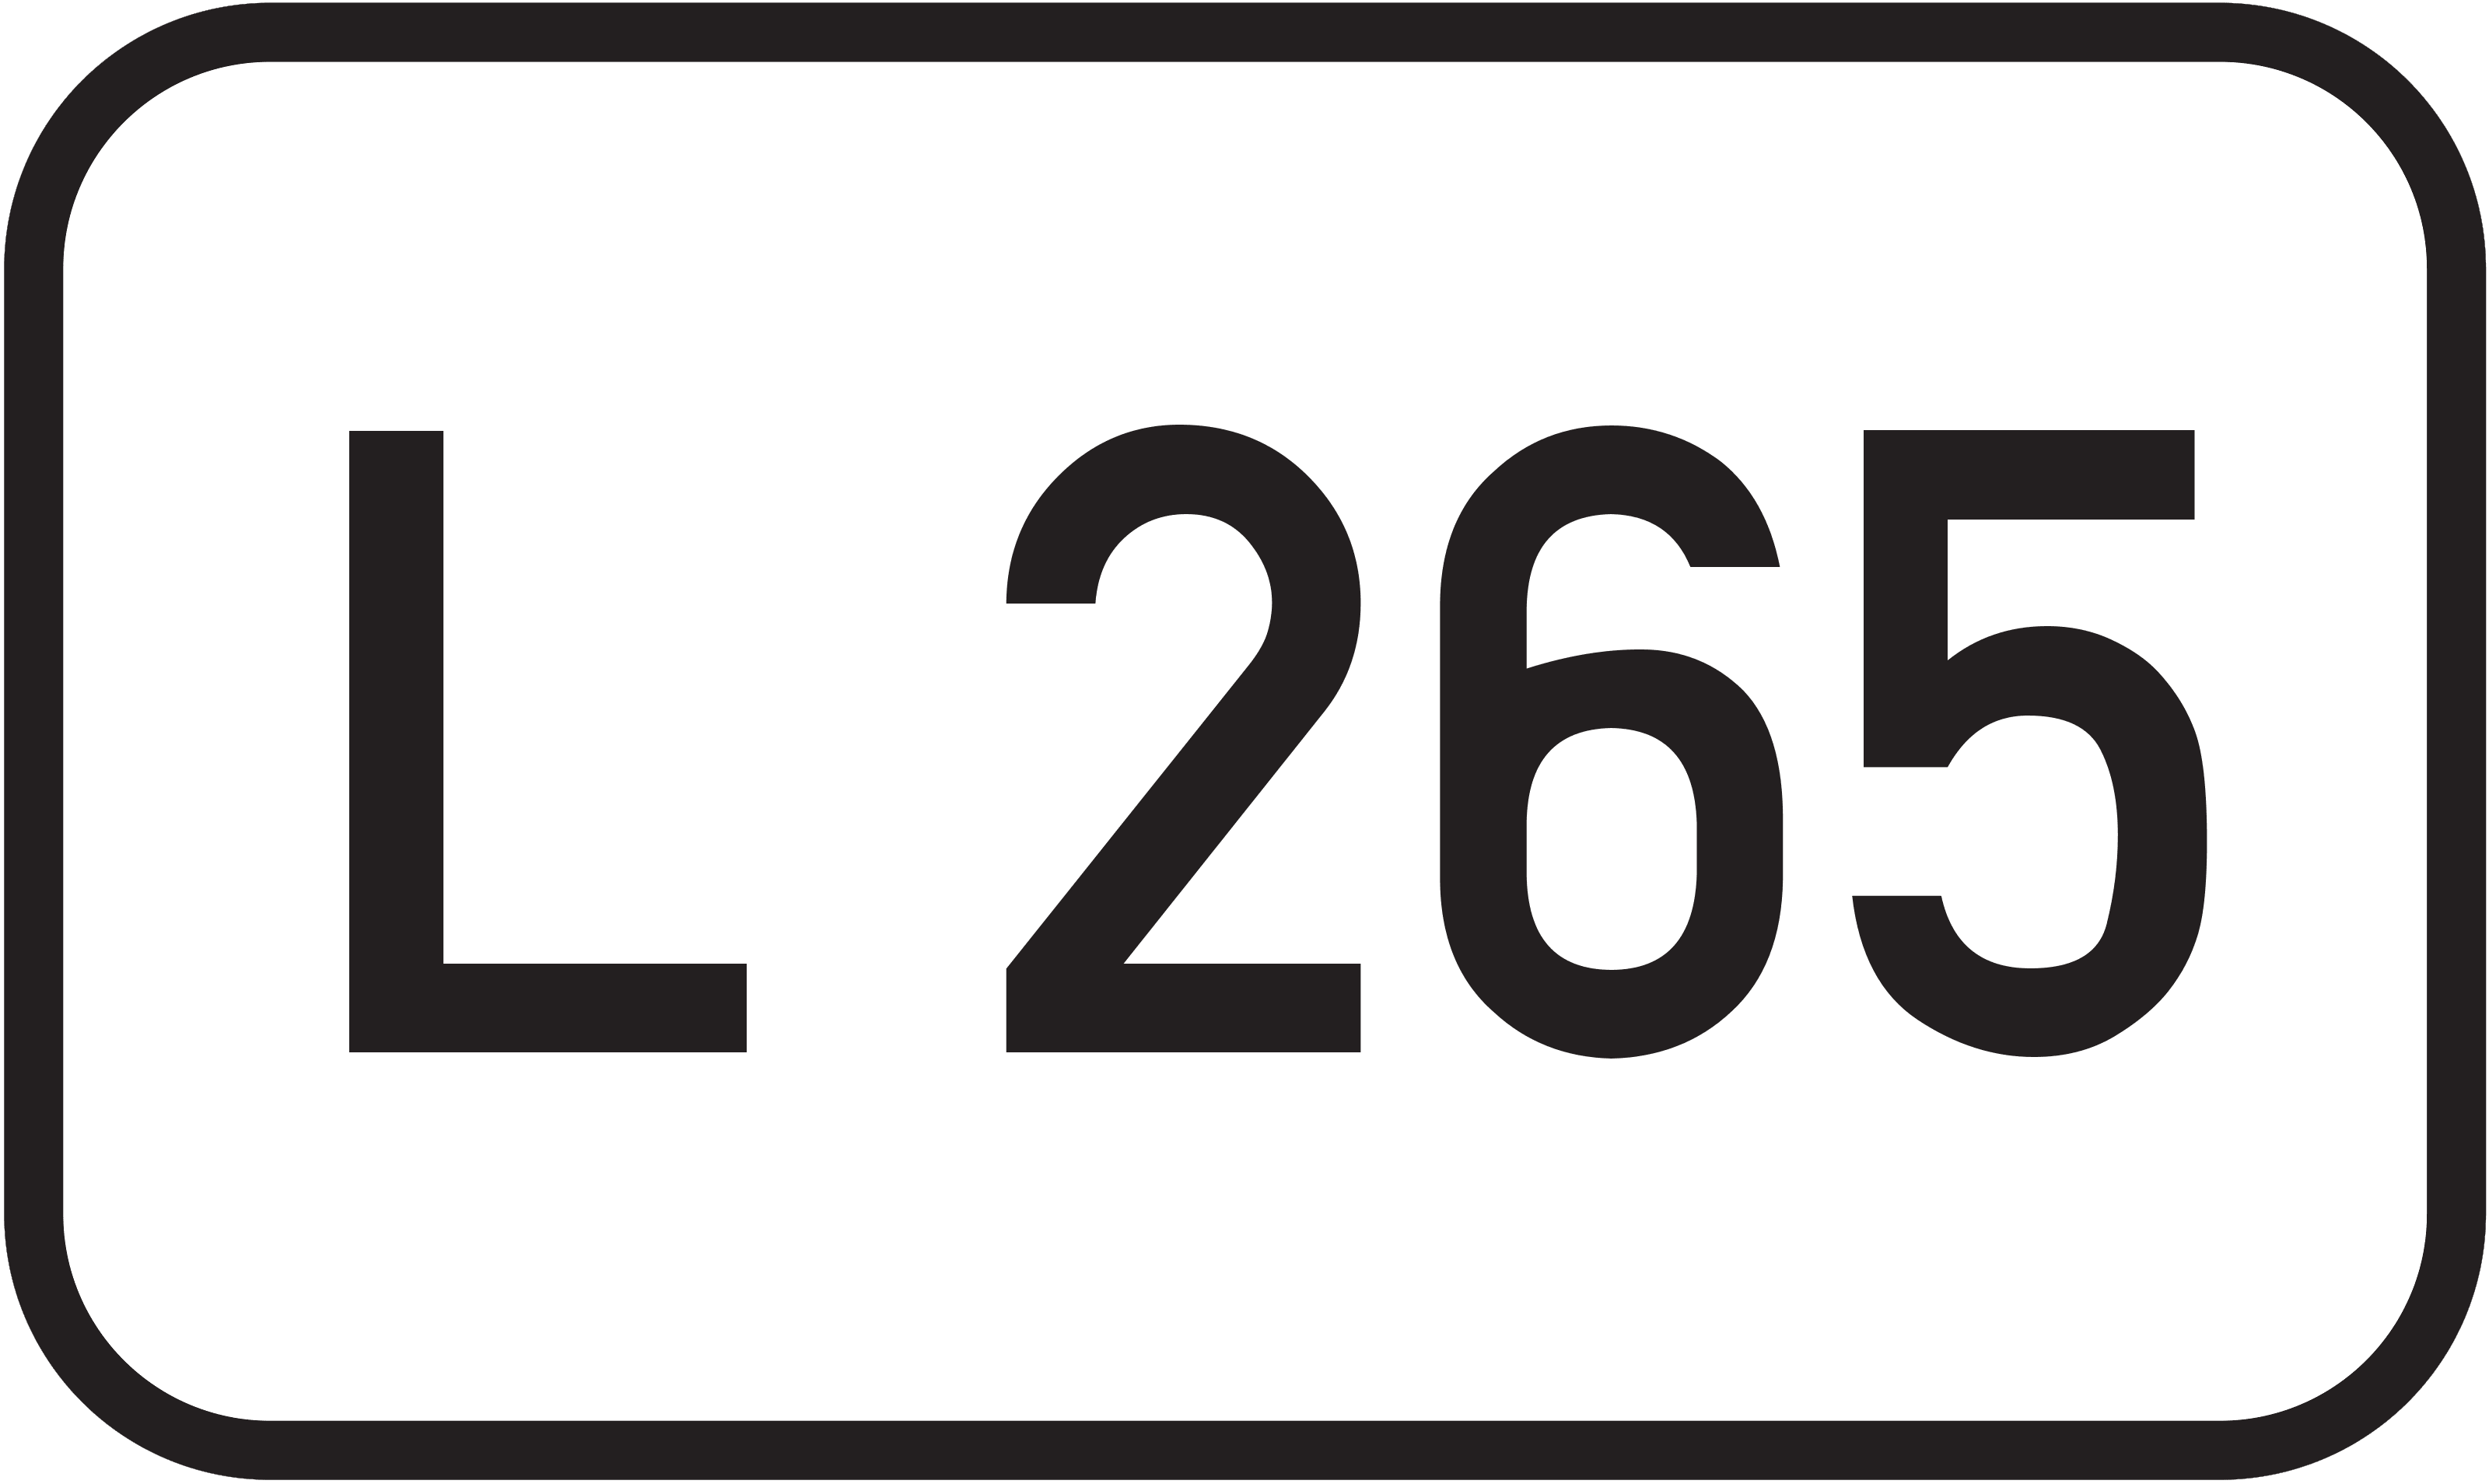 Landesstraße L 265